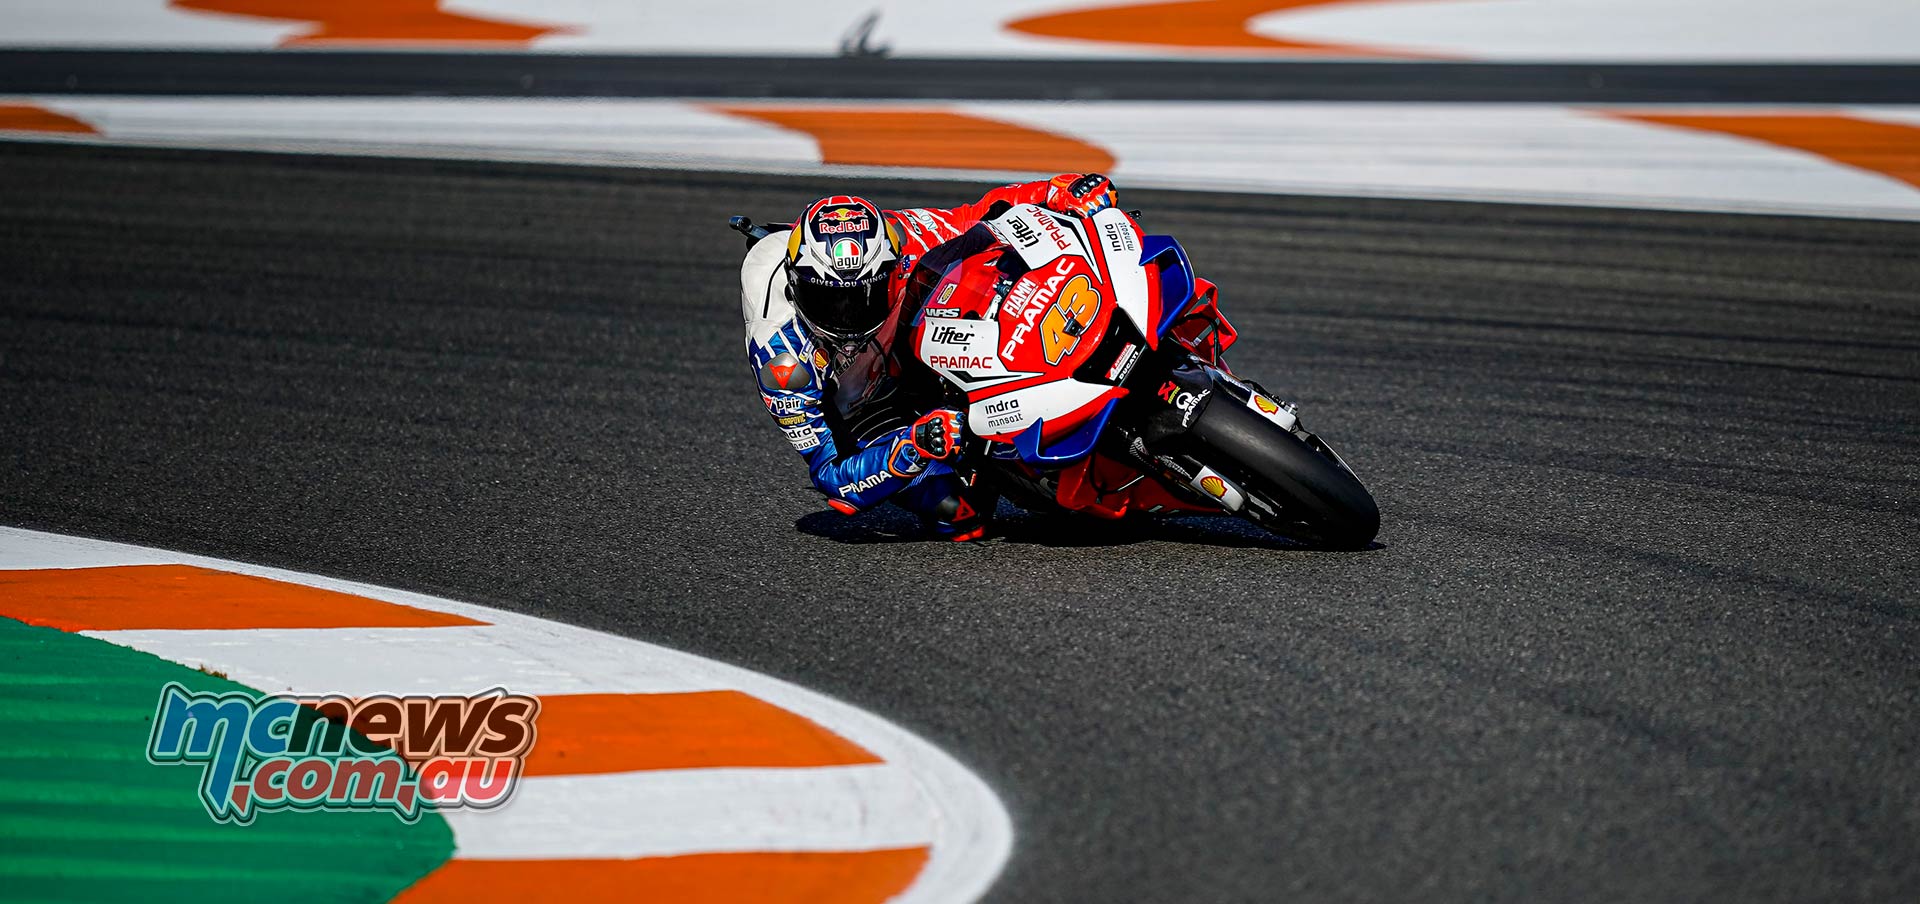 MotoGP: Fabio Quartararo Under Race Lap Record In FP2 At Valencia